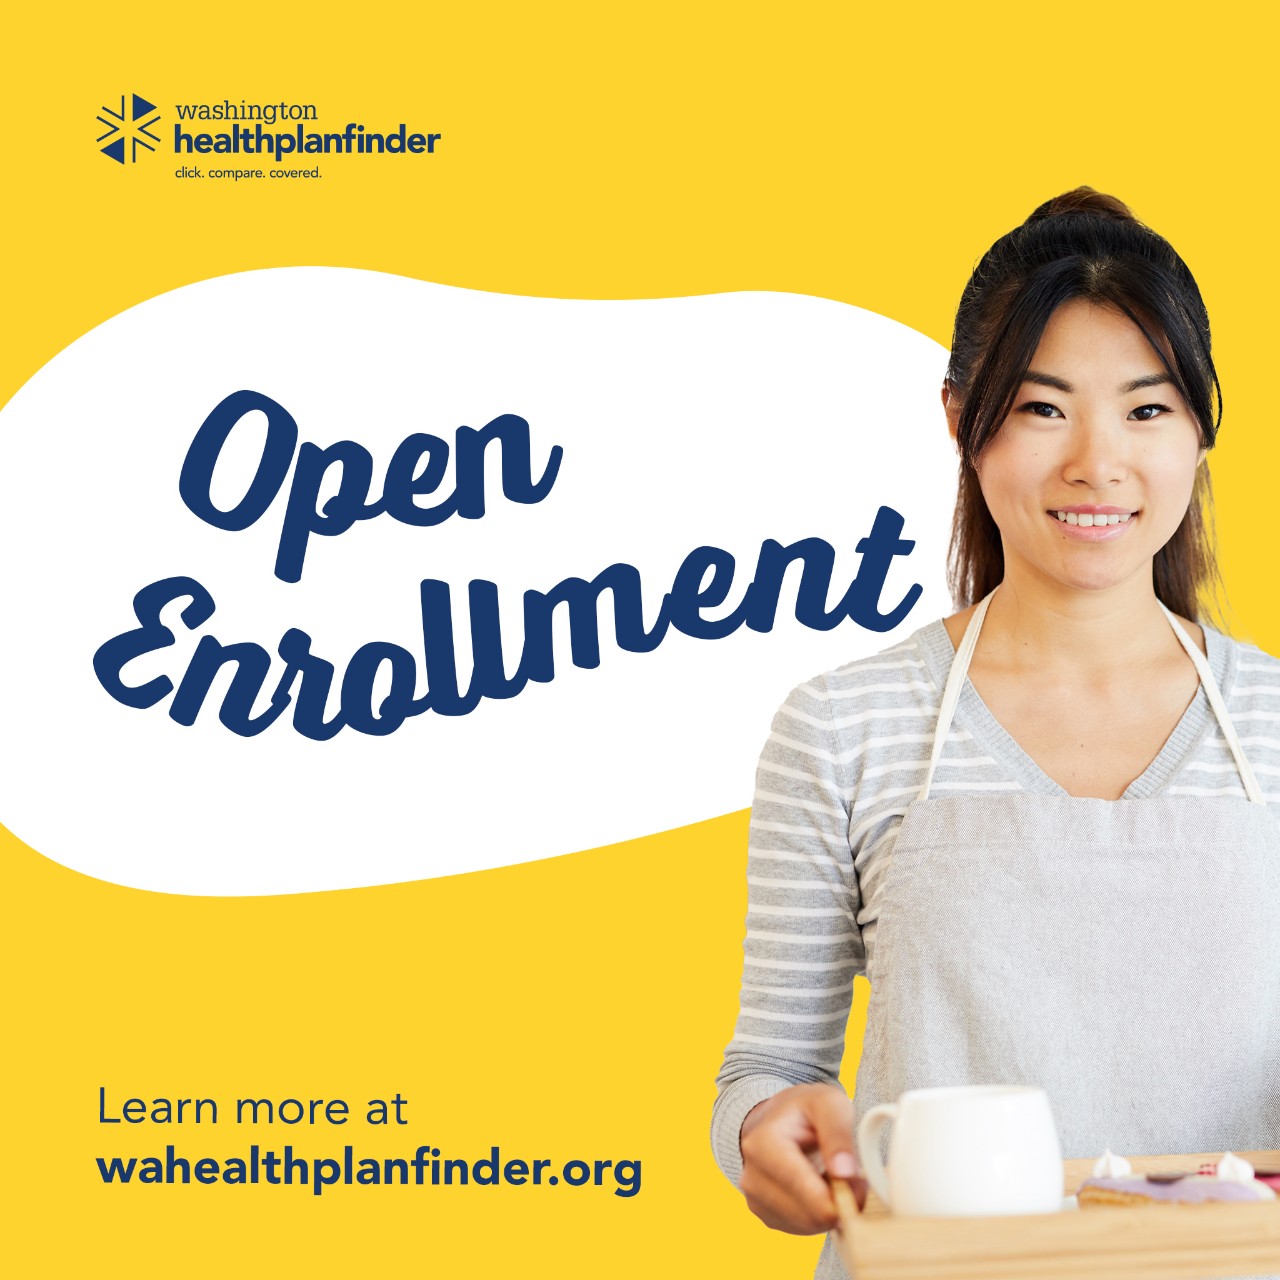 Washington Healthplanfinder. Open Enrollment. Learn more at wahealthplanfinder.org.